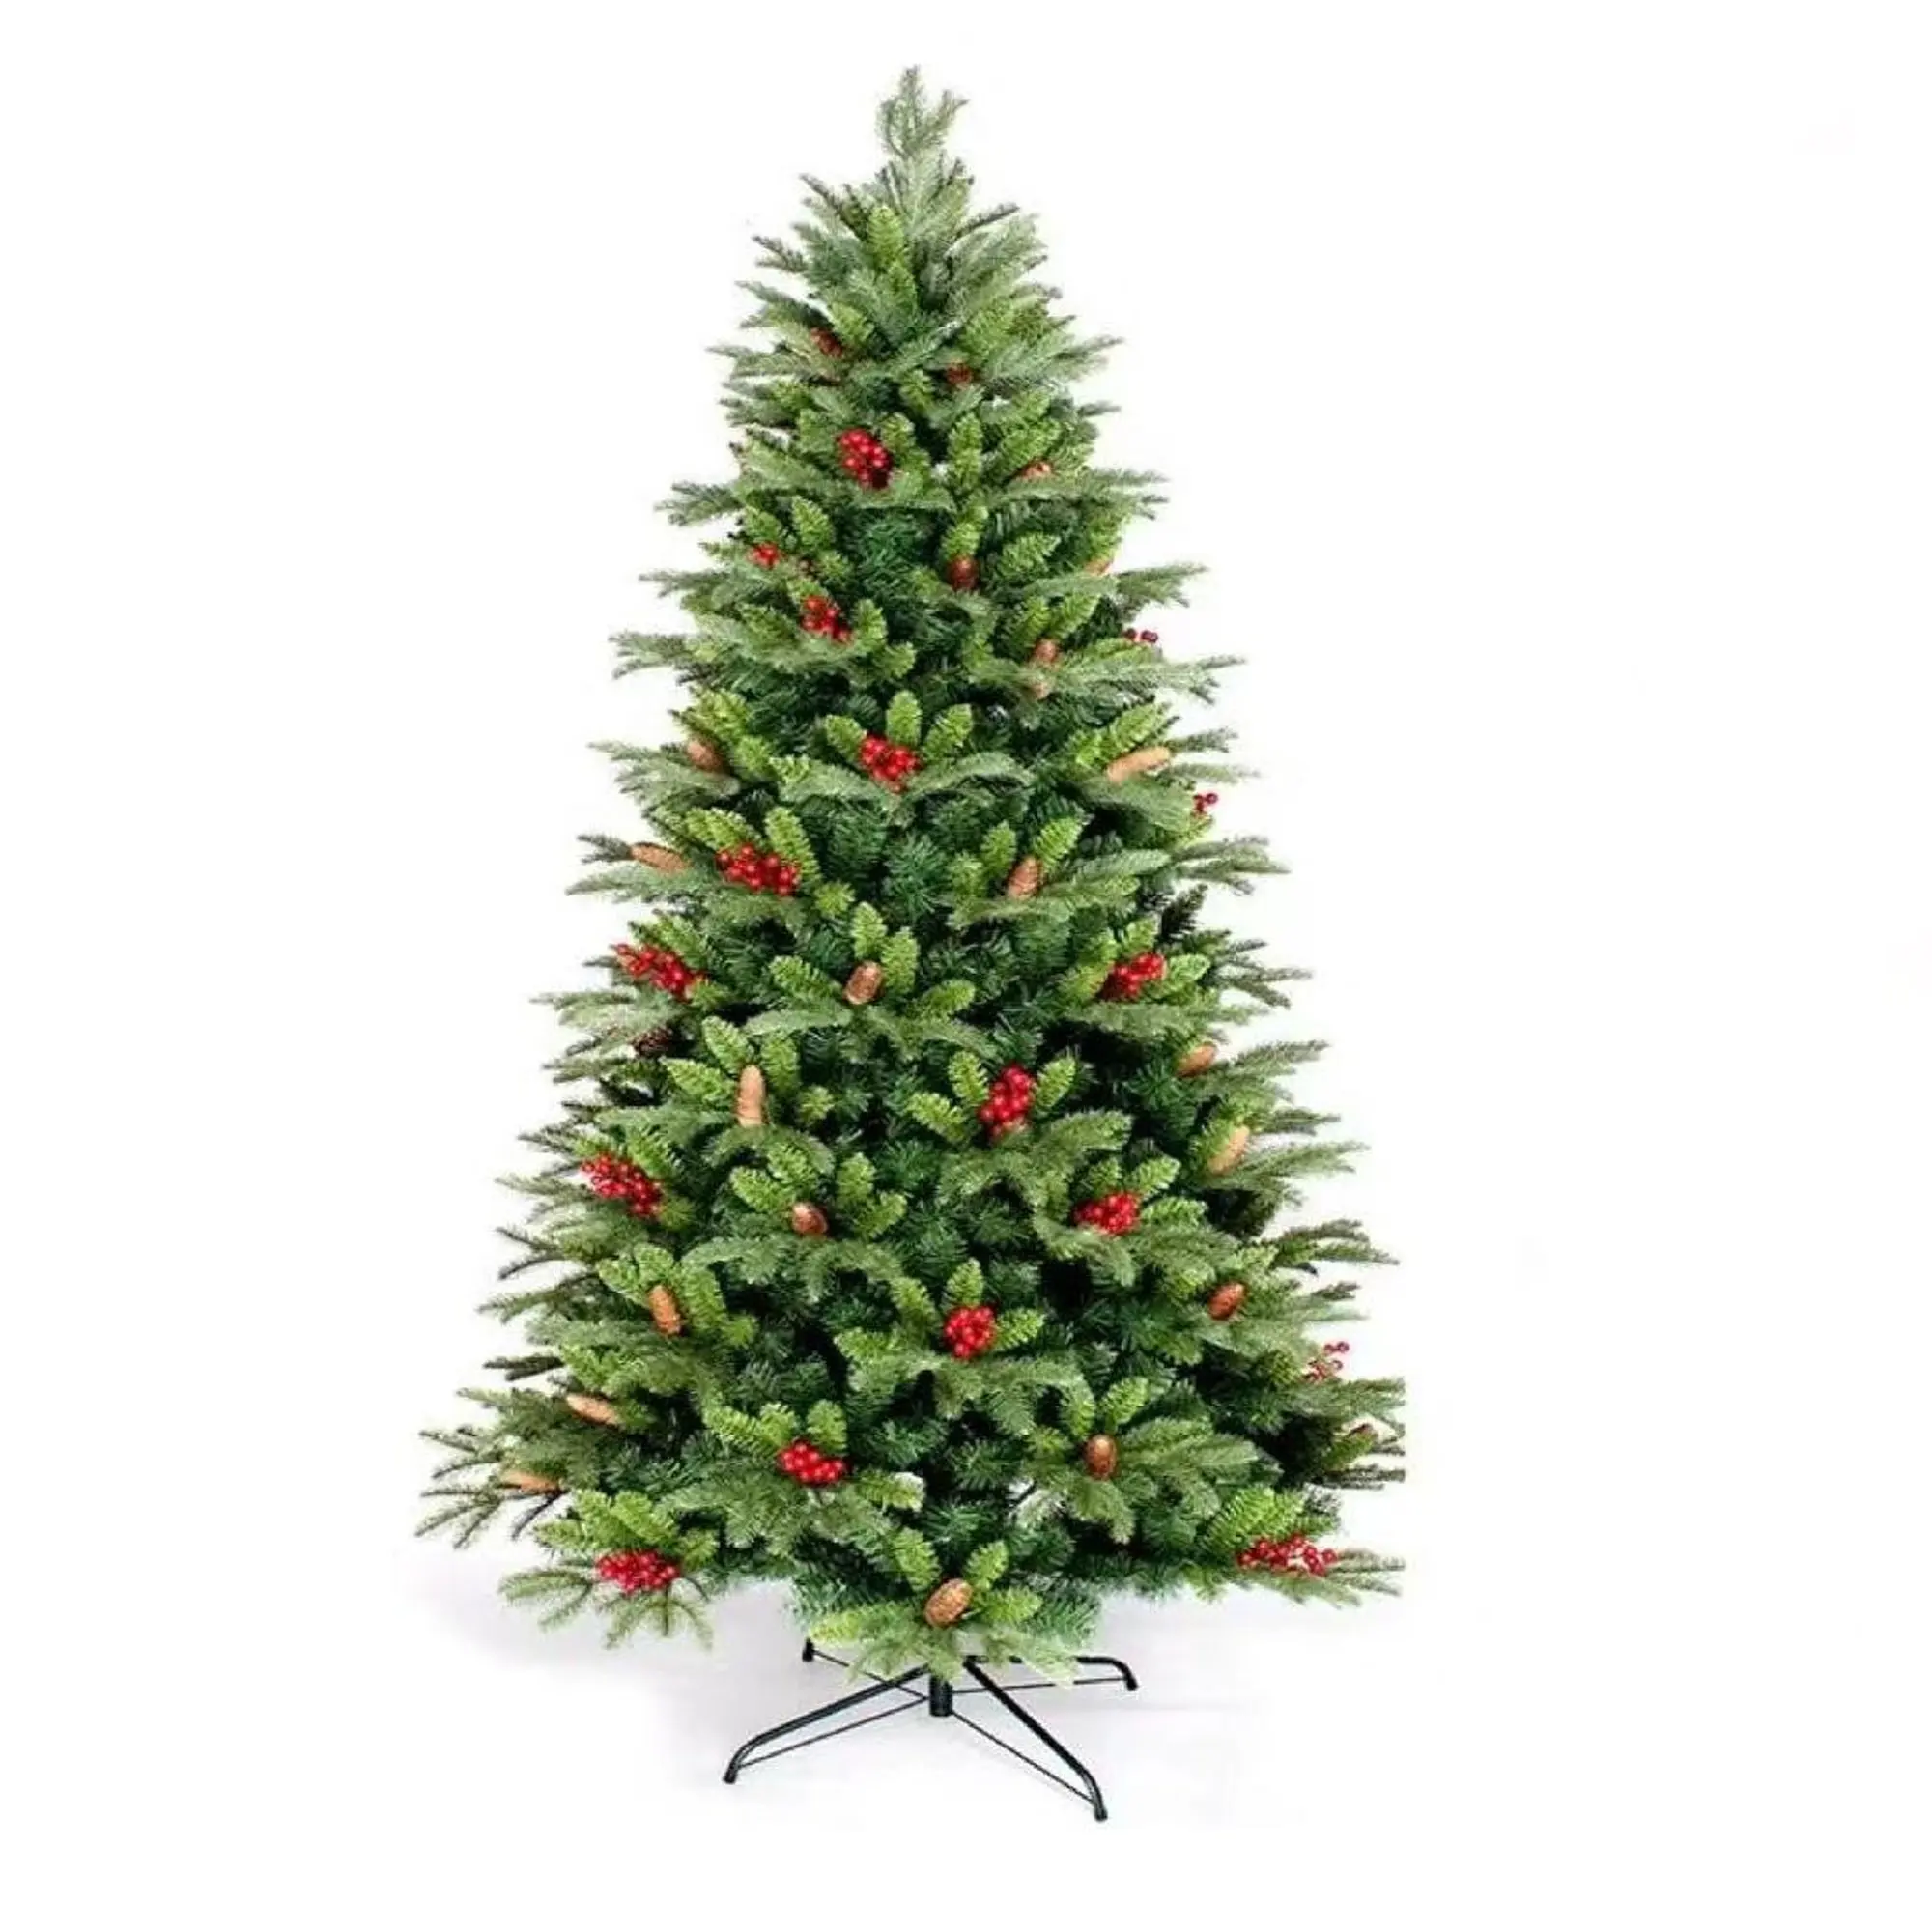 180センチメートルArtificial PE Pvc Pine Cone Decorate Christmas Tree With For Wholesale